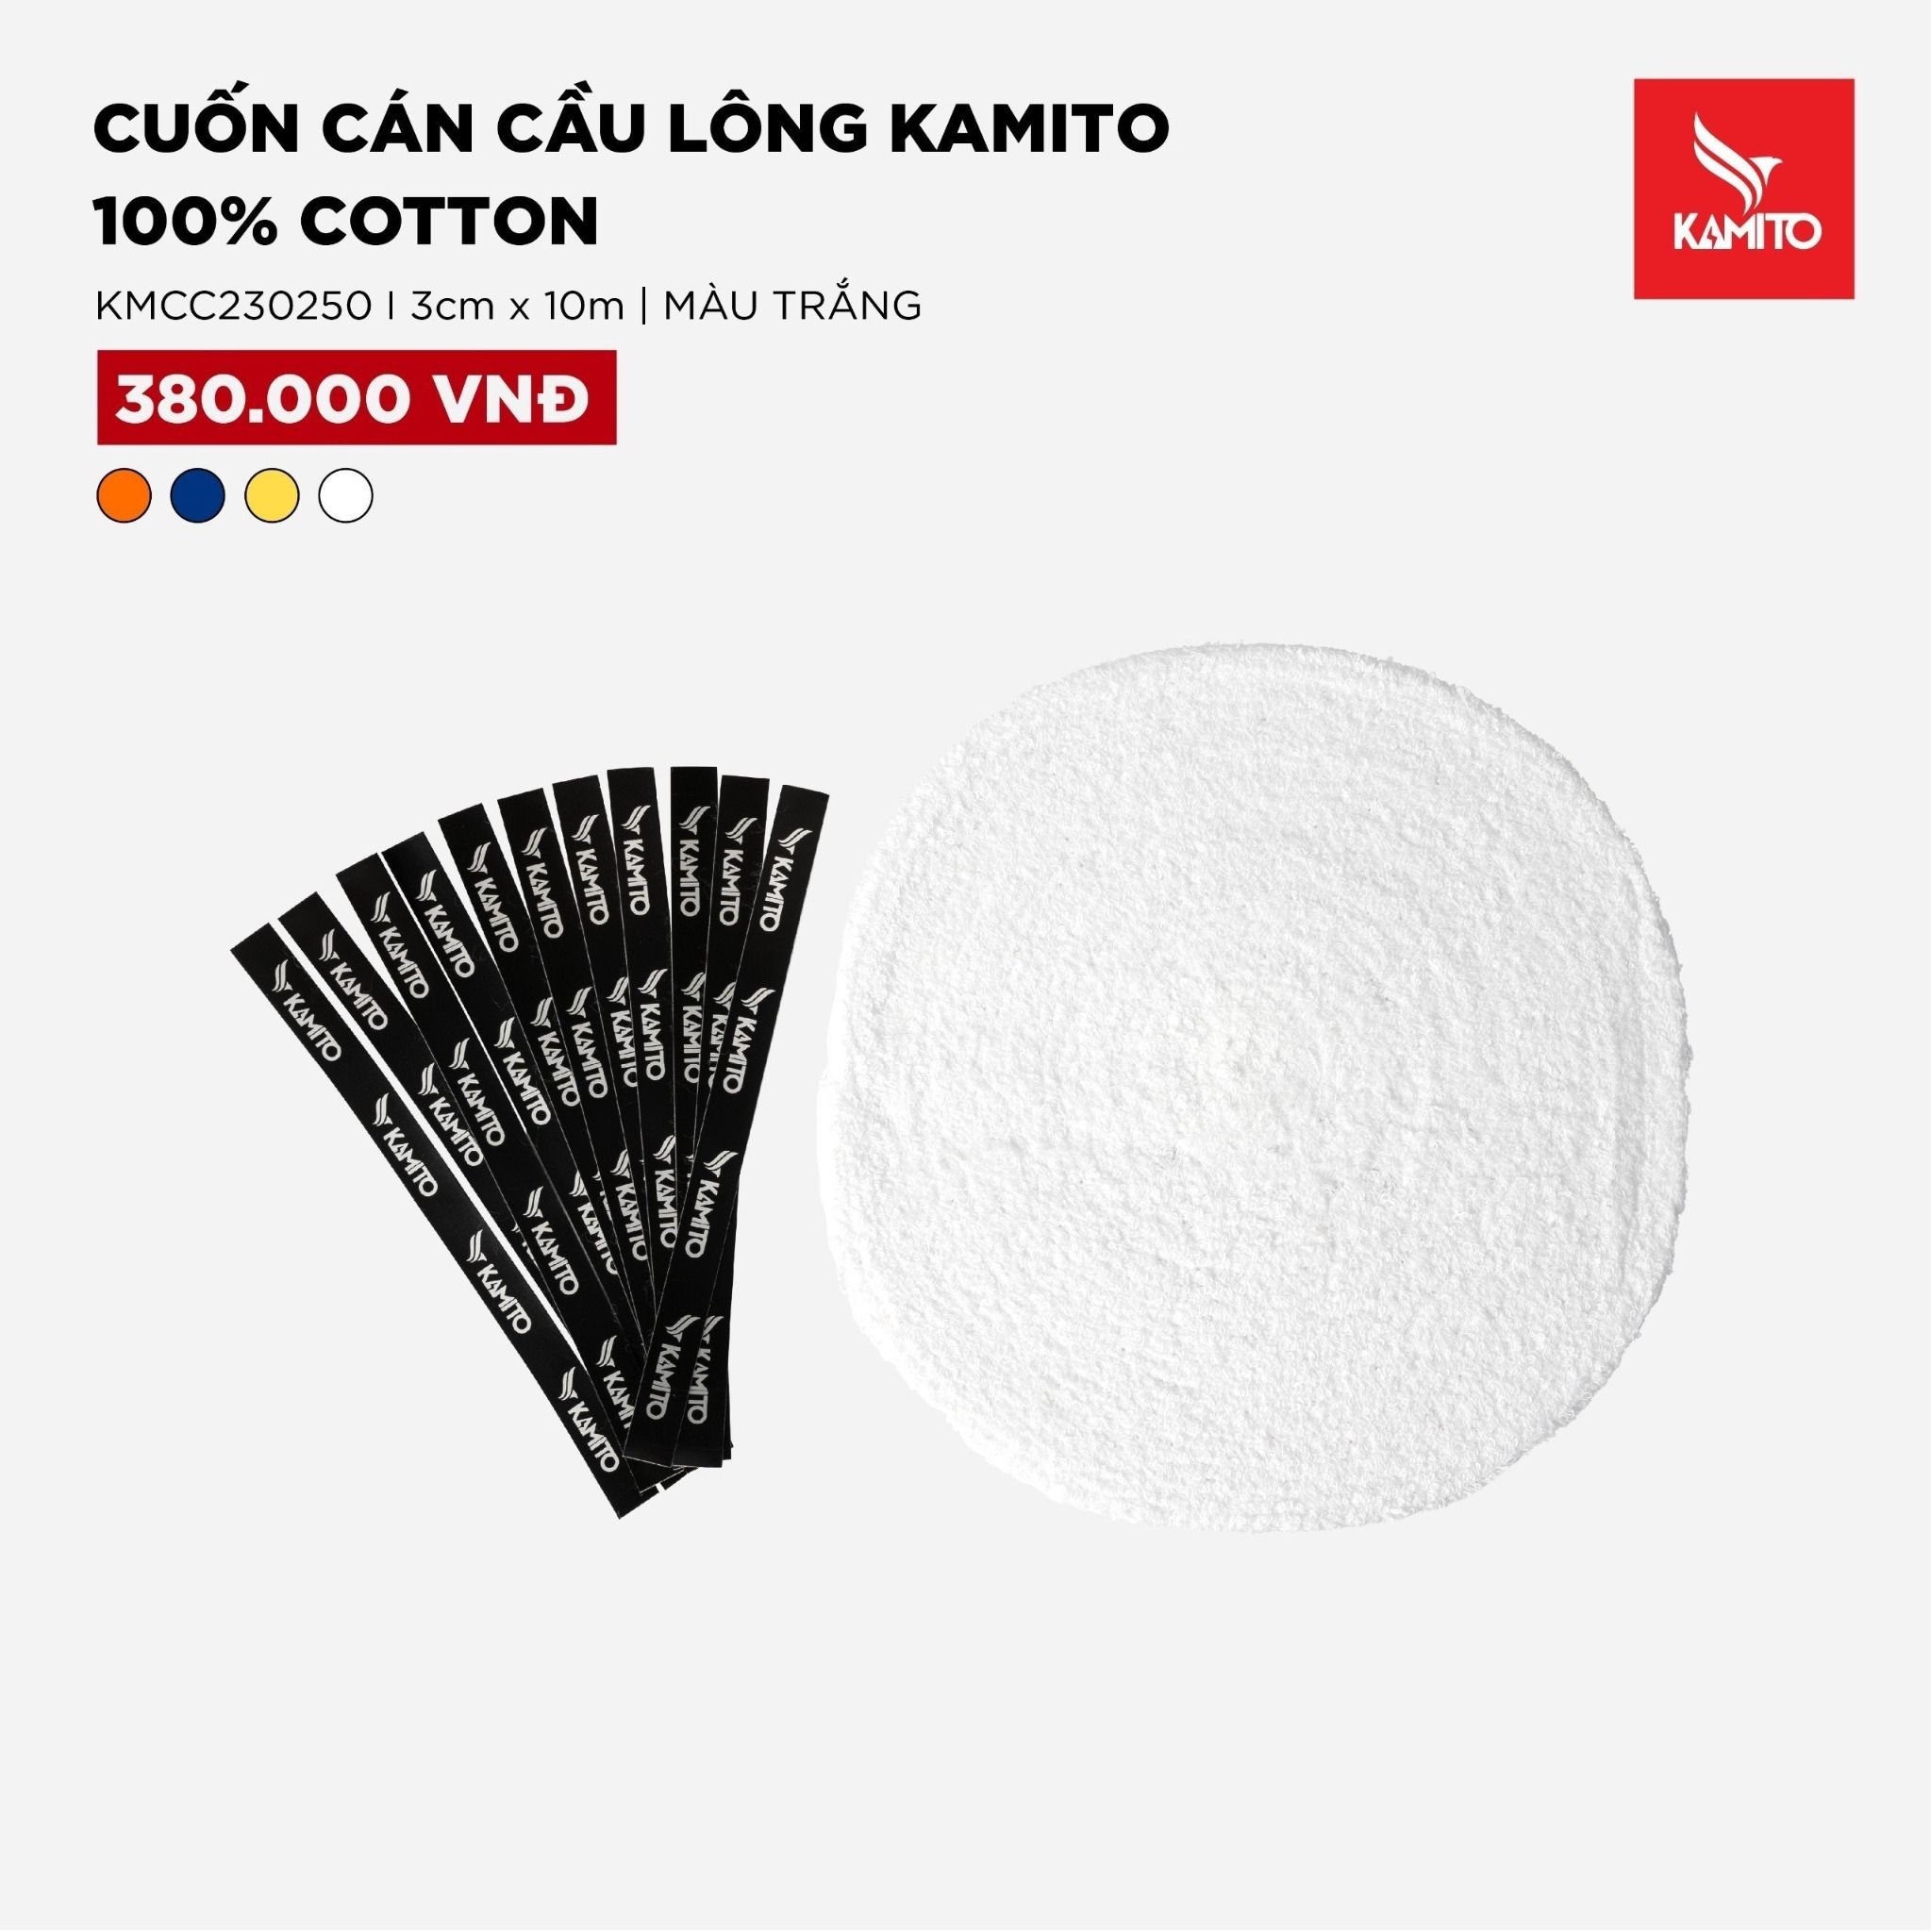  Cuốn cán cầu lông Kamito 100% cotton 